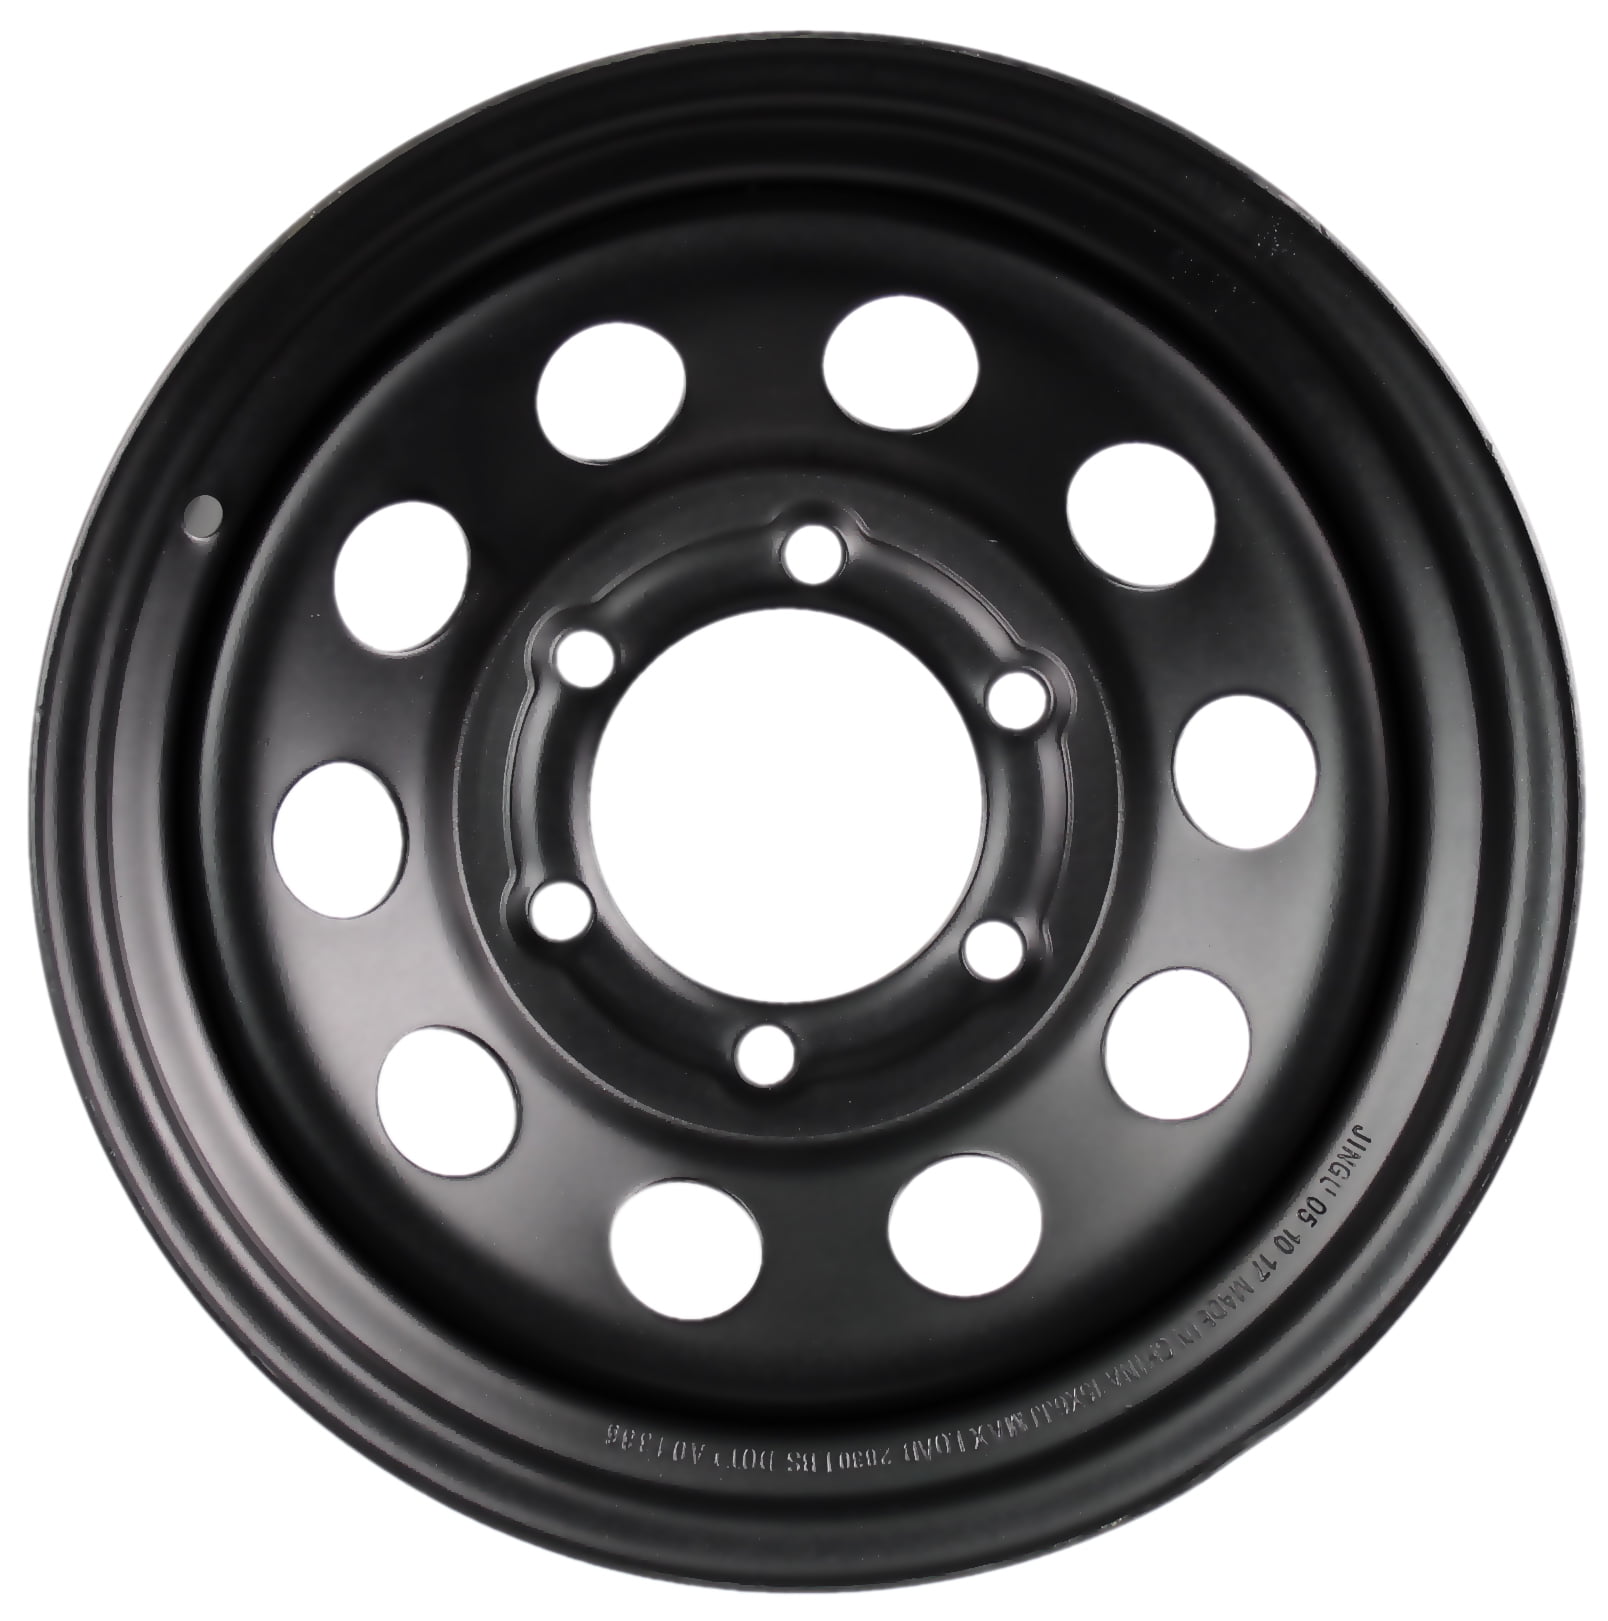 eCustomrim Trailer Rim Wheel 15X6 Black Modular 2830 Lb. 4.27